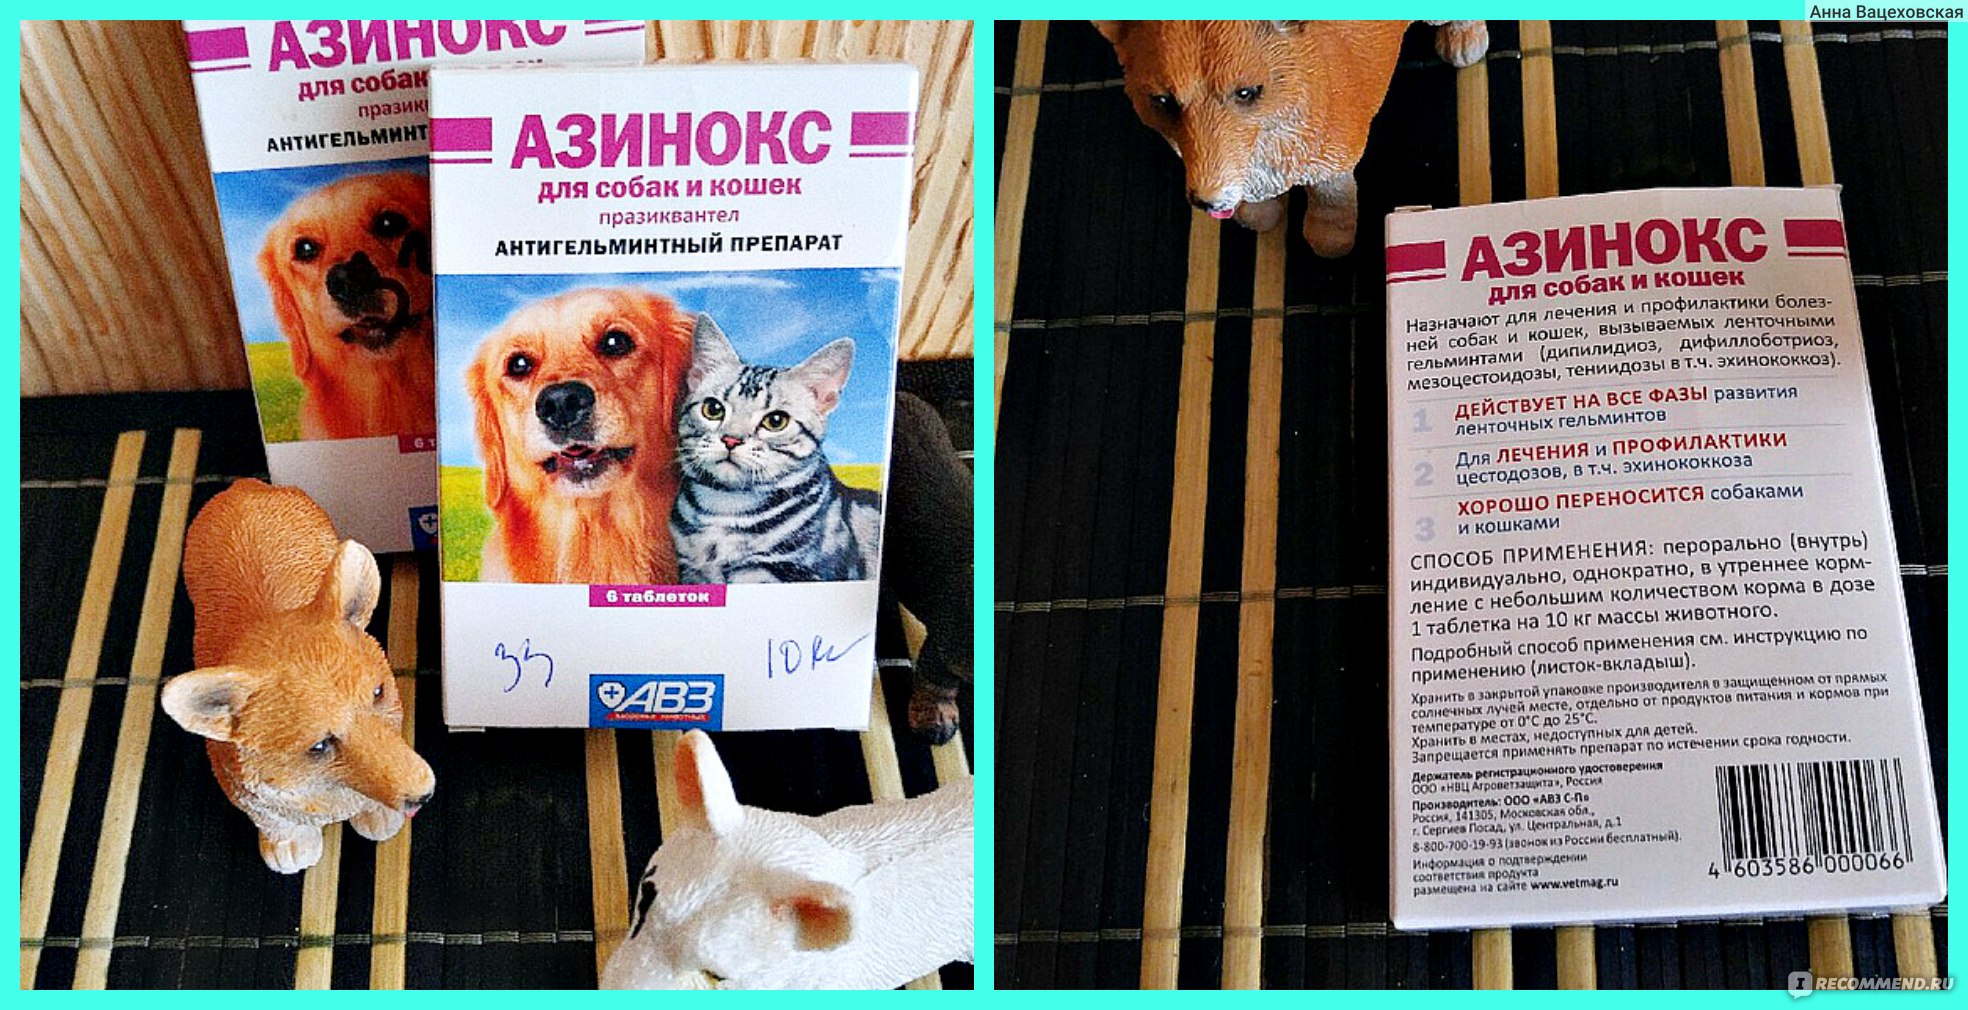 Все, что нужно знать о препарате азинокс плюс для профилактики гельминтов у собак